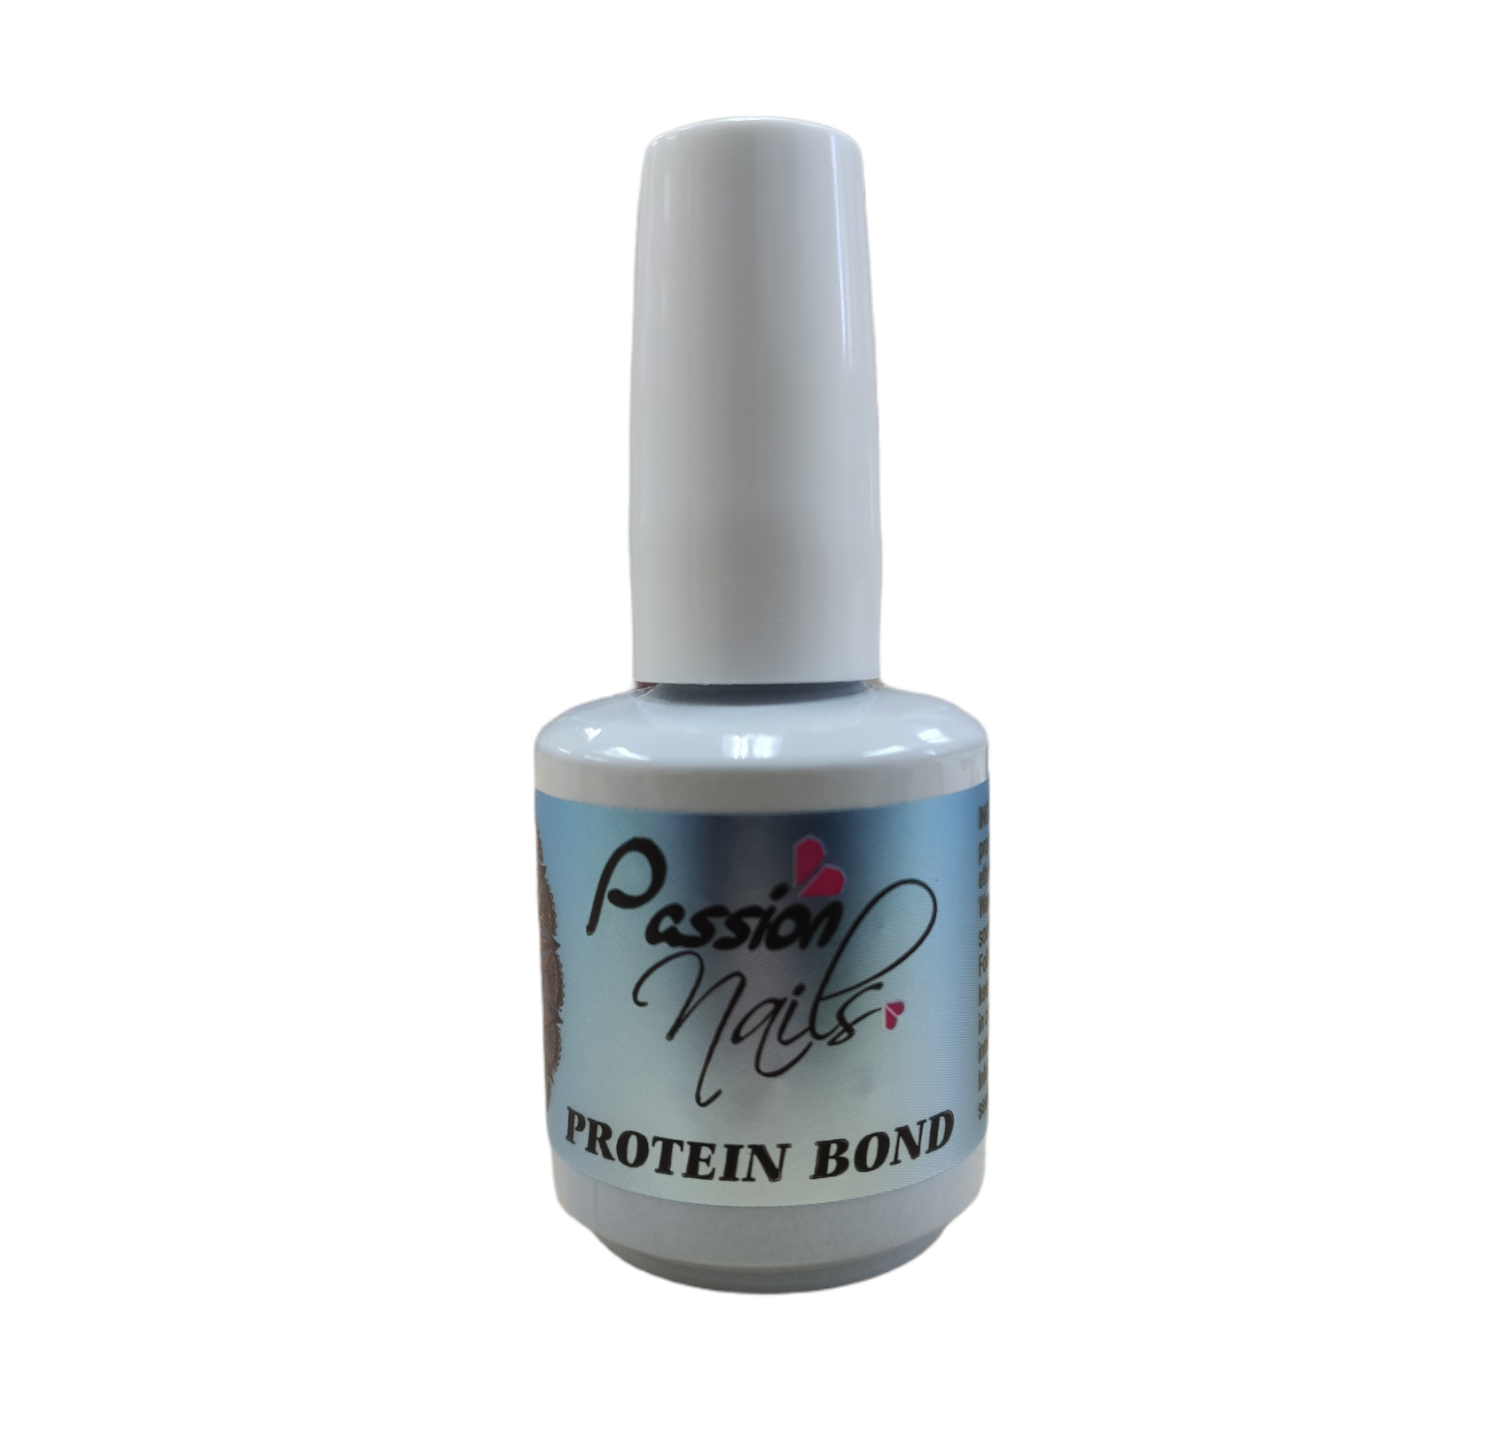 Passion Nails Protein Bond 0.5 fl oz